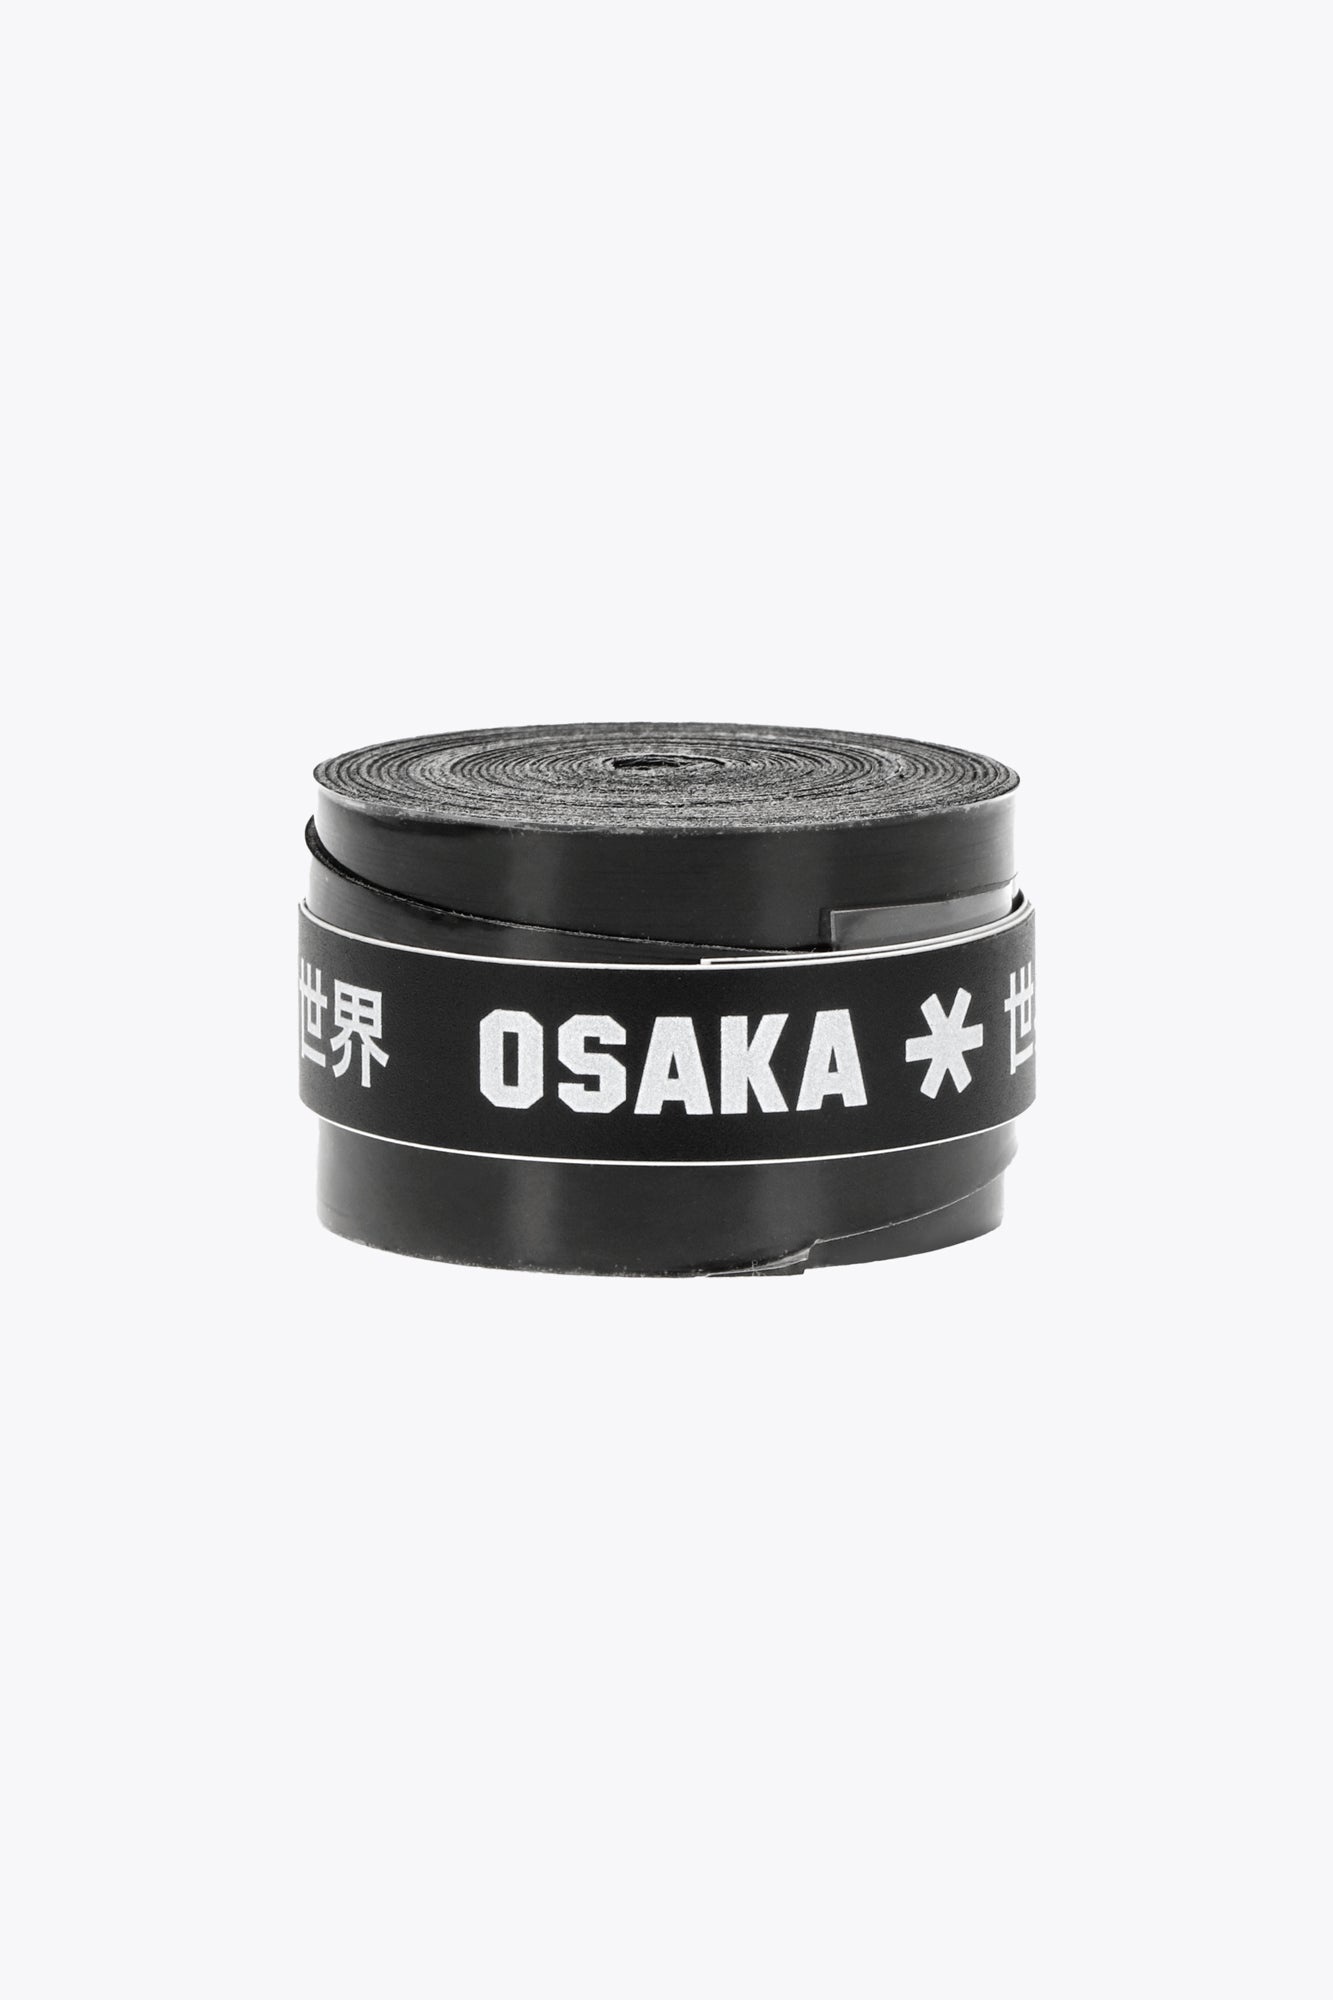 Osaka Pro Tour Overgrip - Black-2